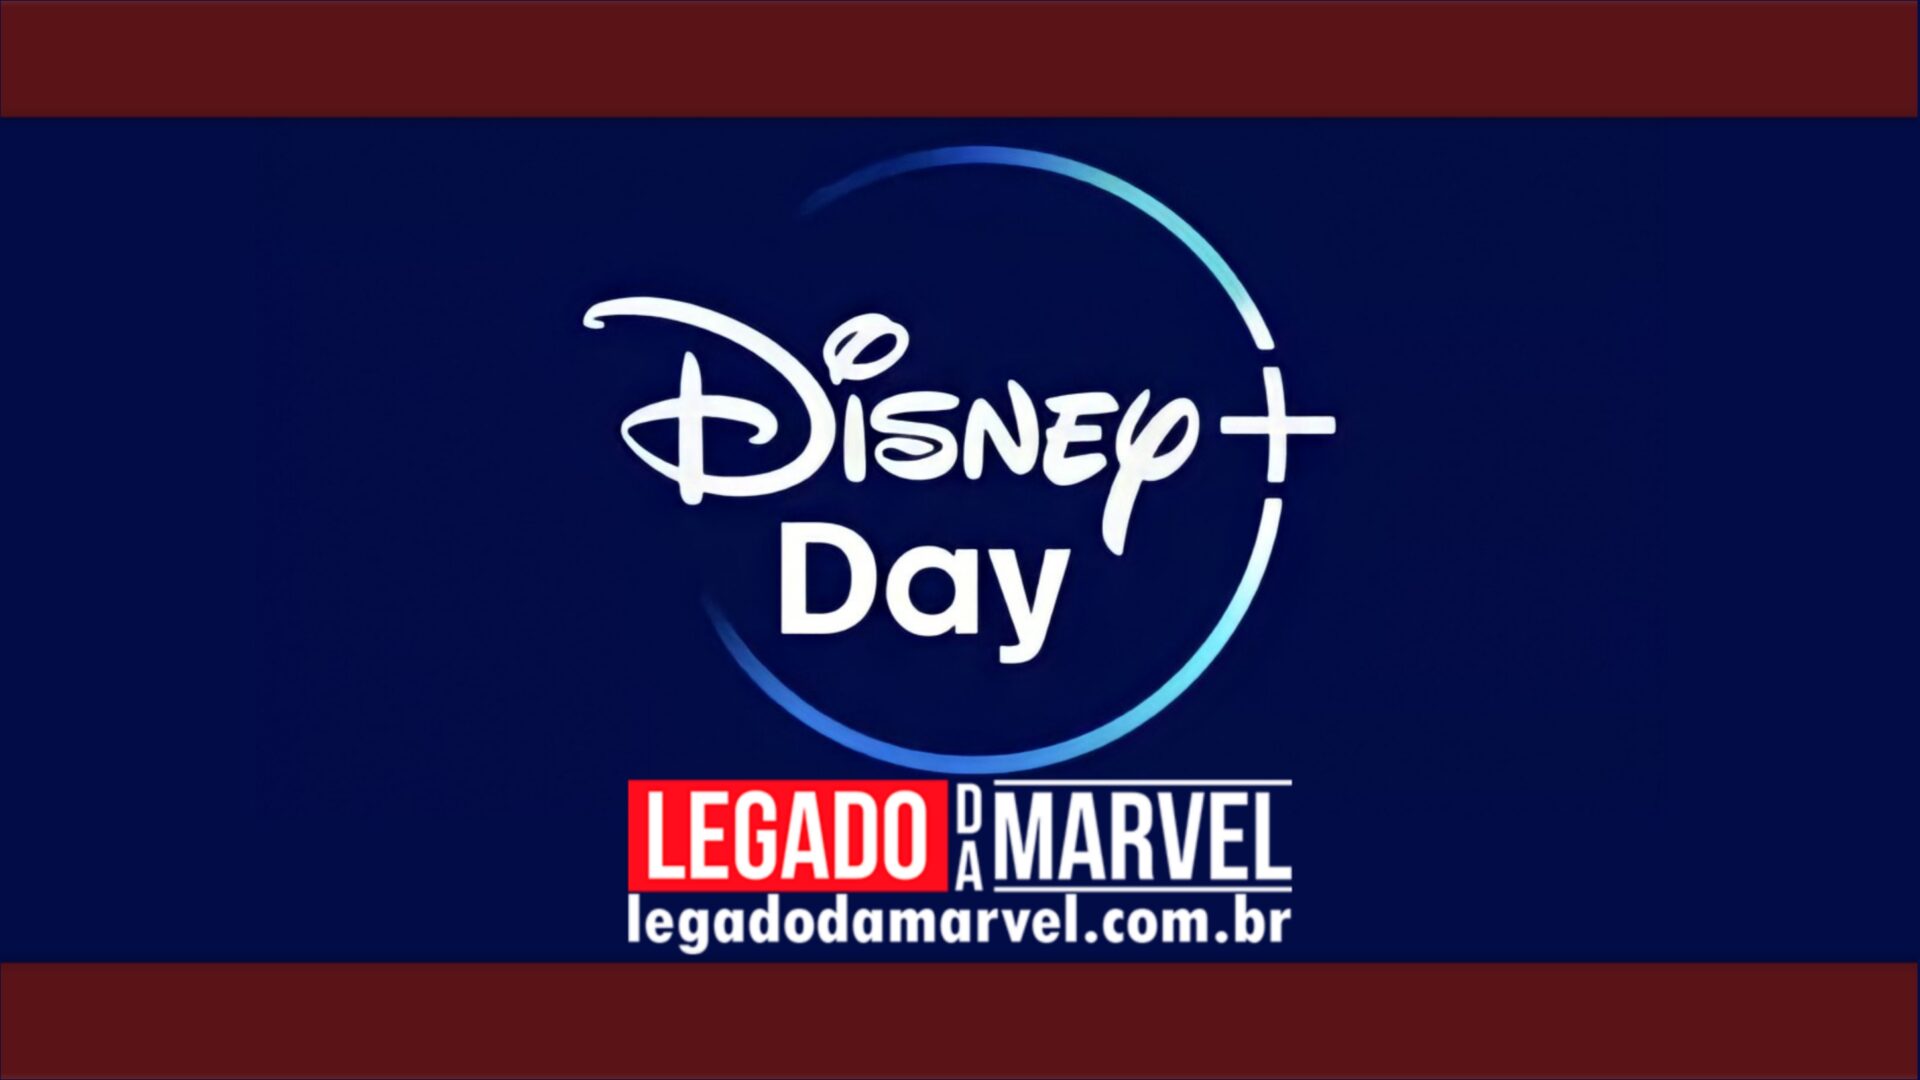 Saiba como vai ser o Disney+ Day, que contará com trailers e anúncios